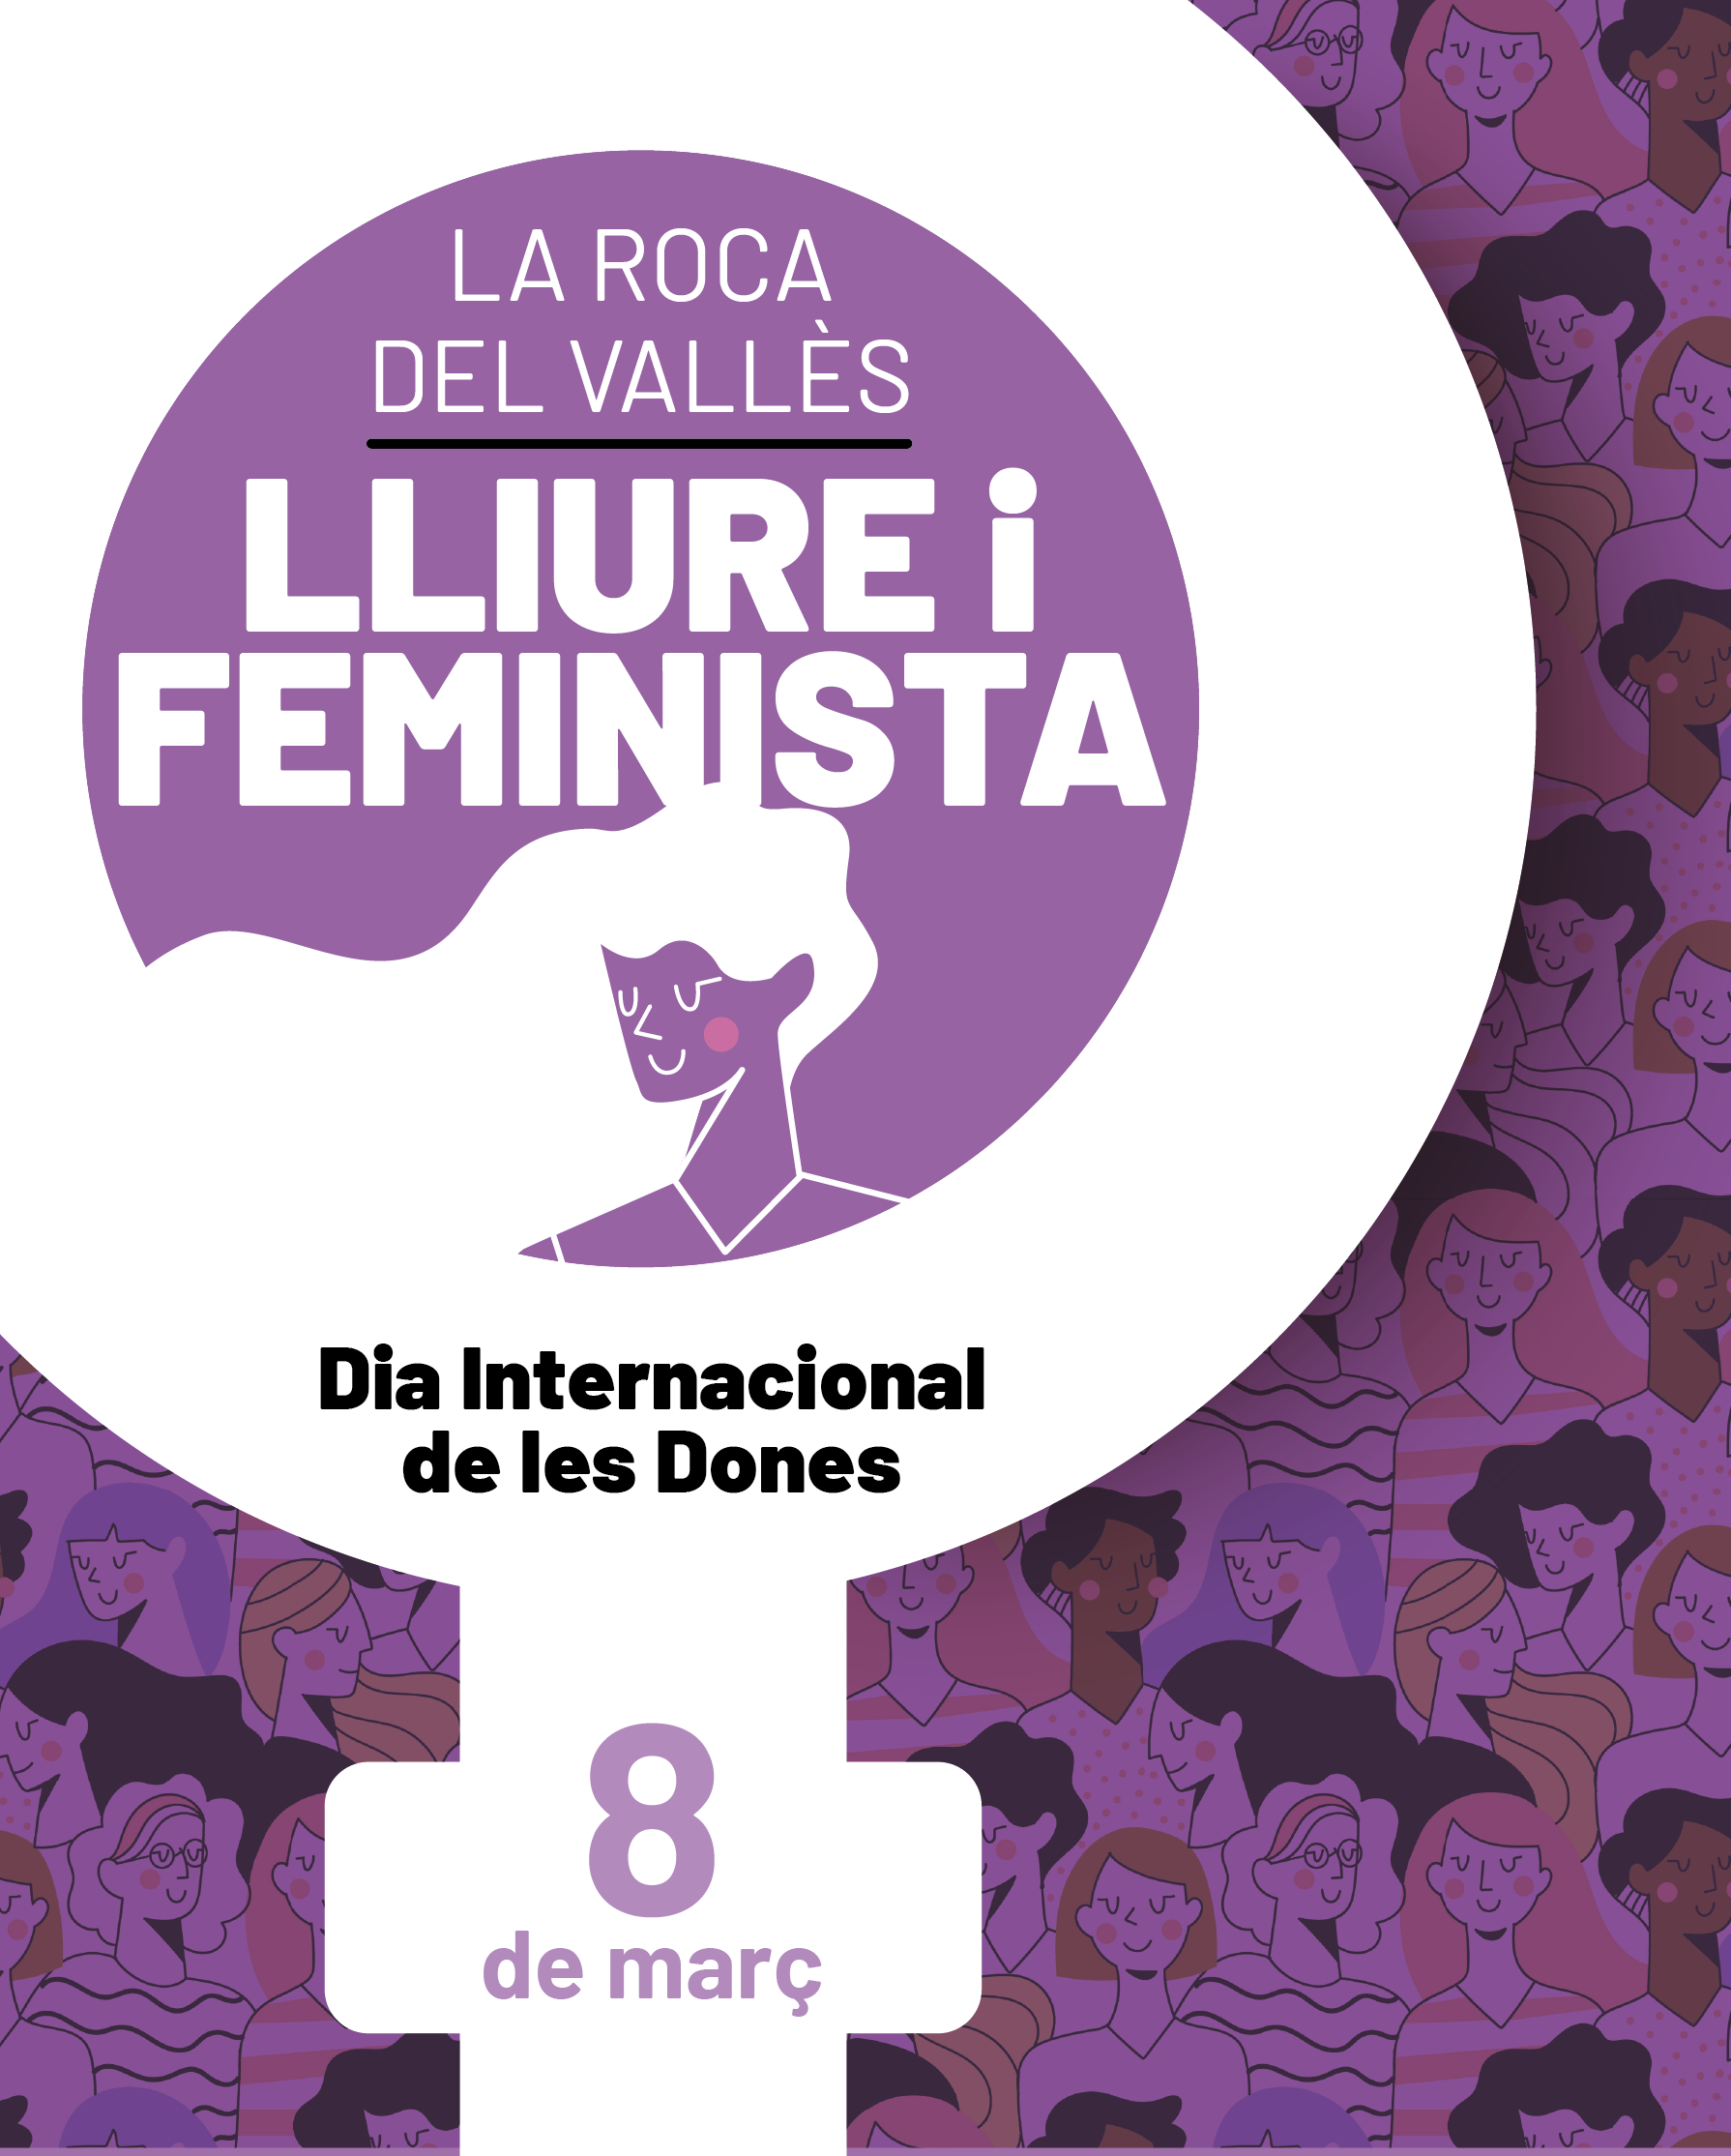 Dia Internacional de les Dones a la Roca del Vallès